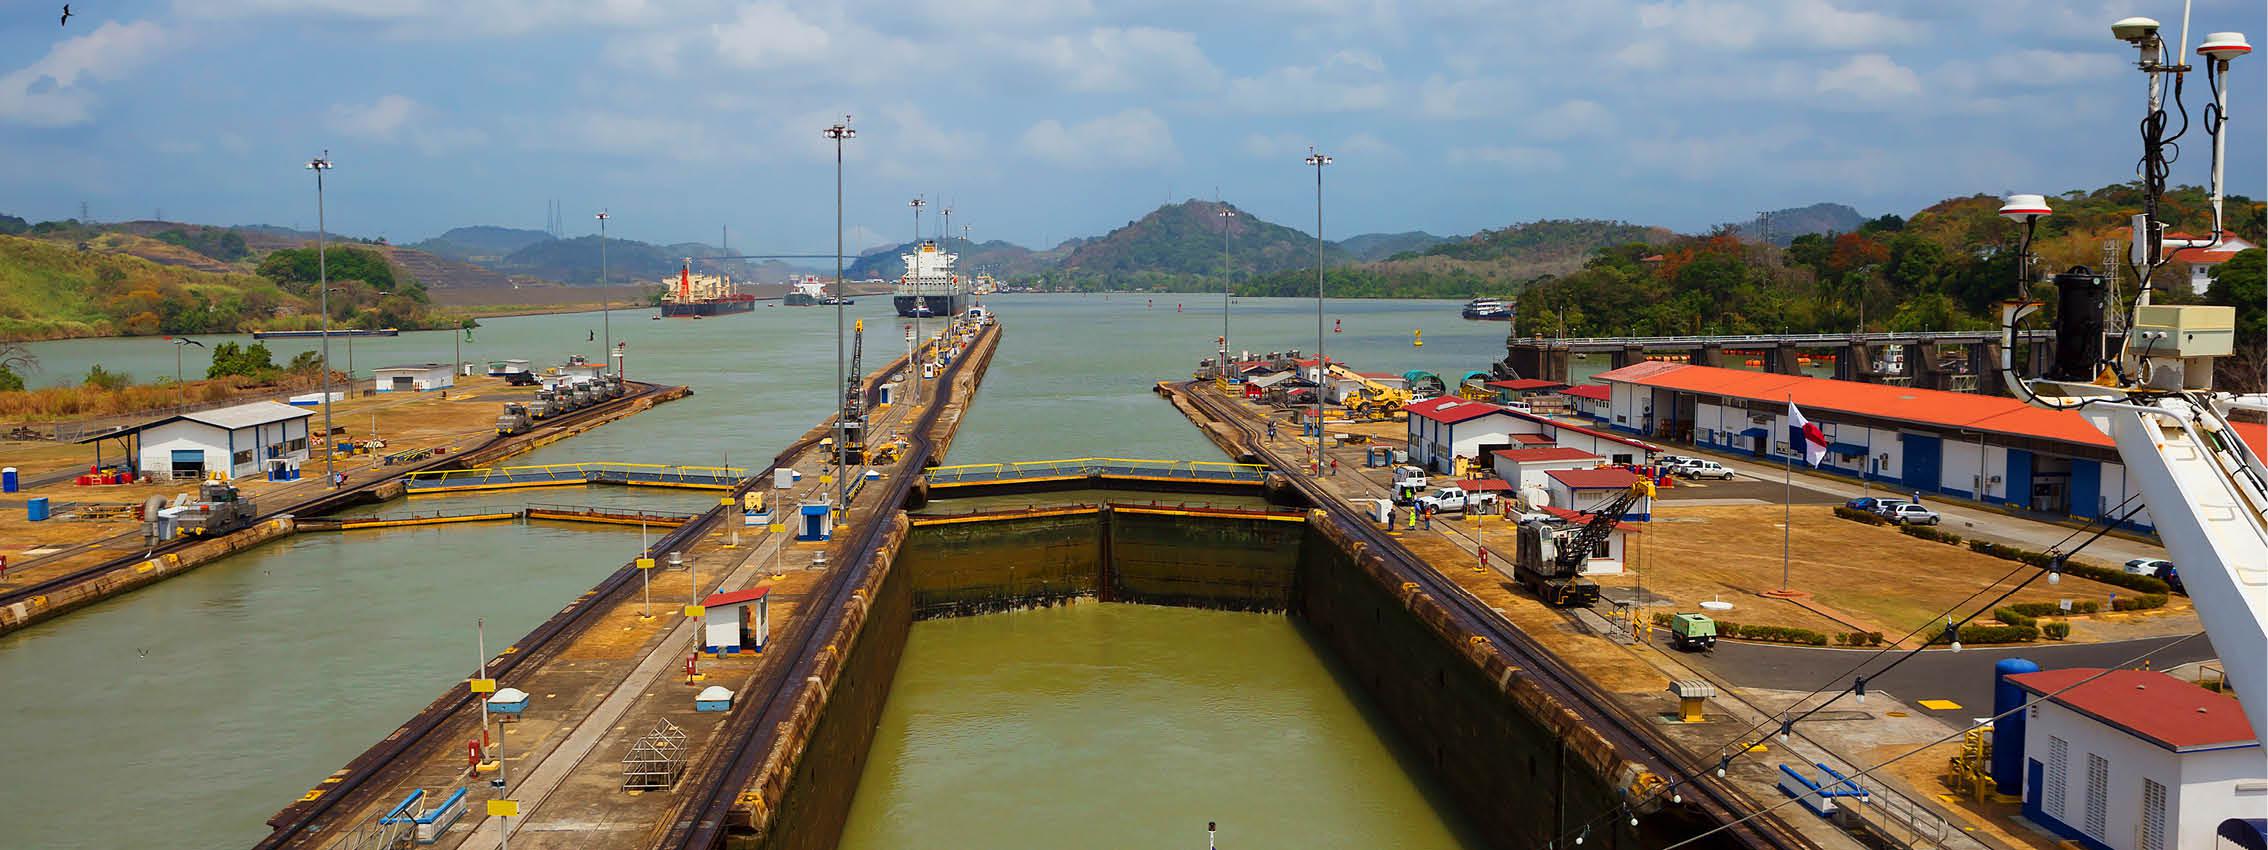 Panamakanalen er en menneskeskabt kanal, som forbinder Stillehavet og Atlanterhavet